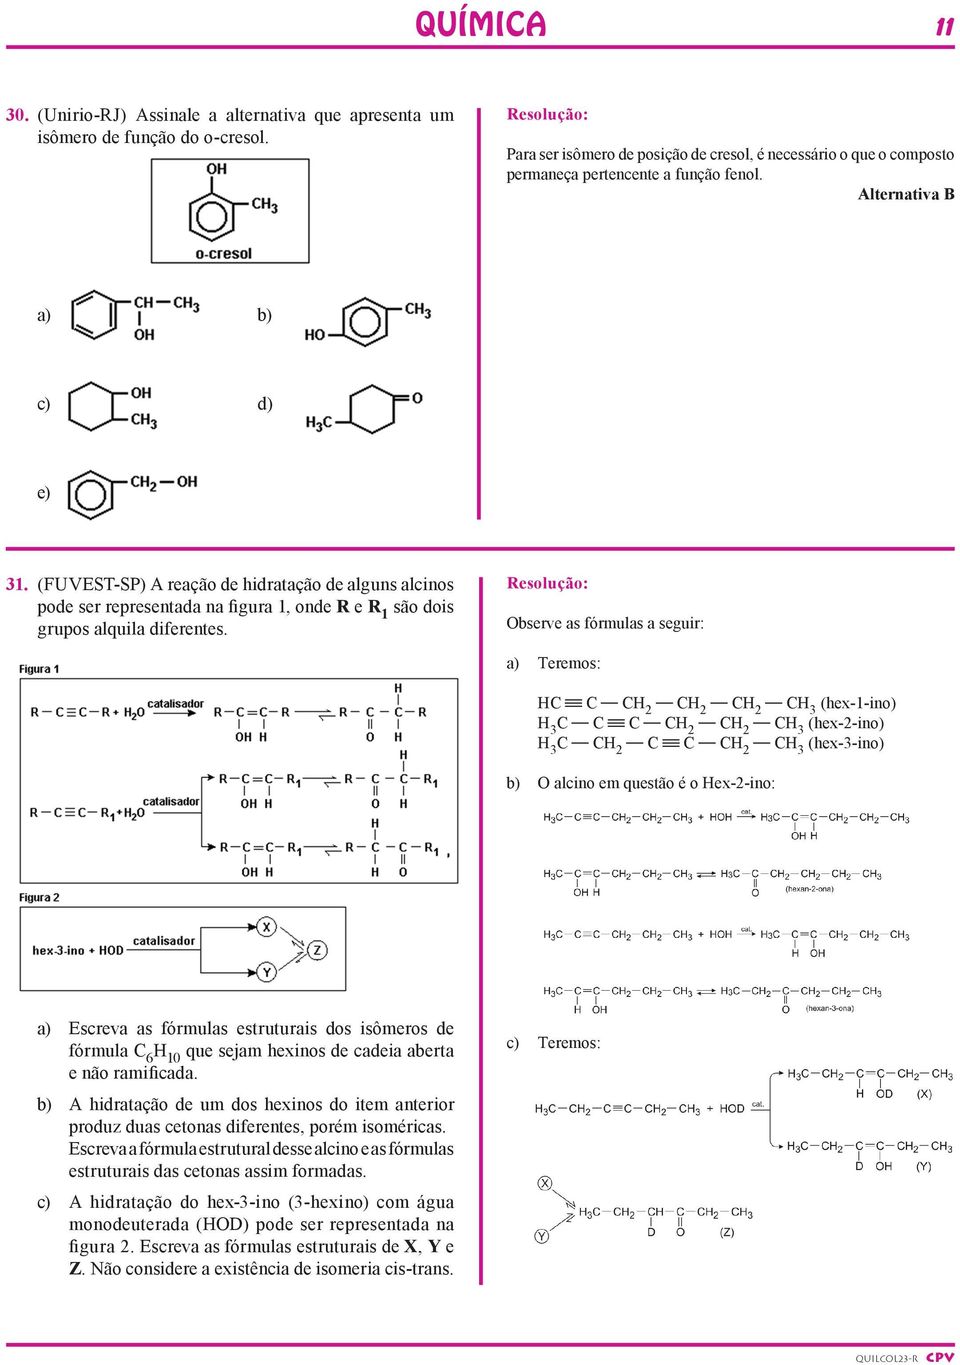 (Fuvest-SP) A reação de hidratação de alguns alcinos pode ser representada na figura 1, onde R e R 1 são dois grupos alquila diferentes.